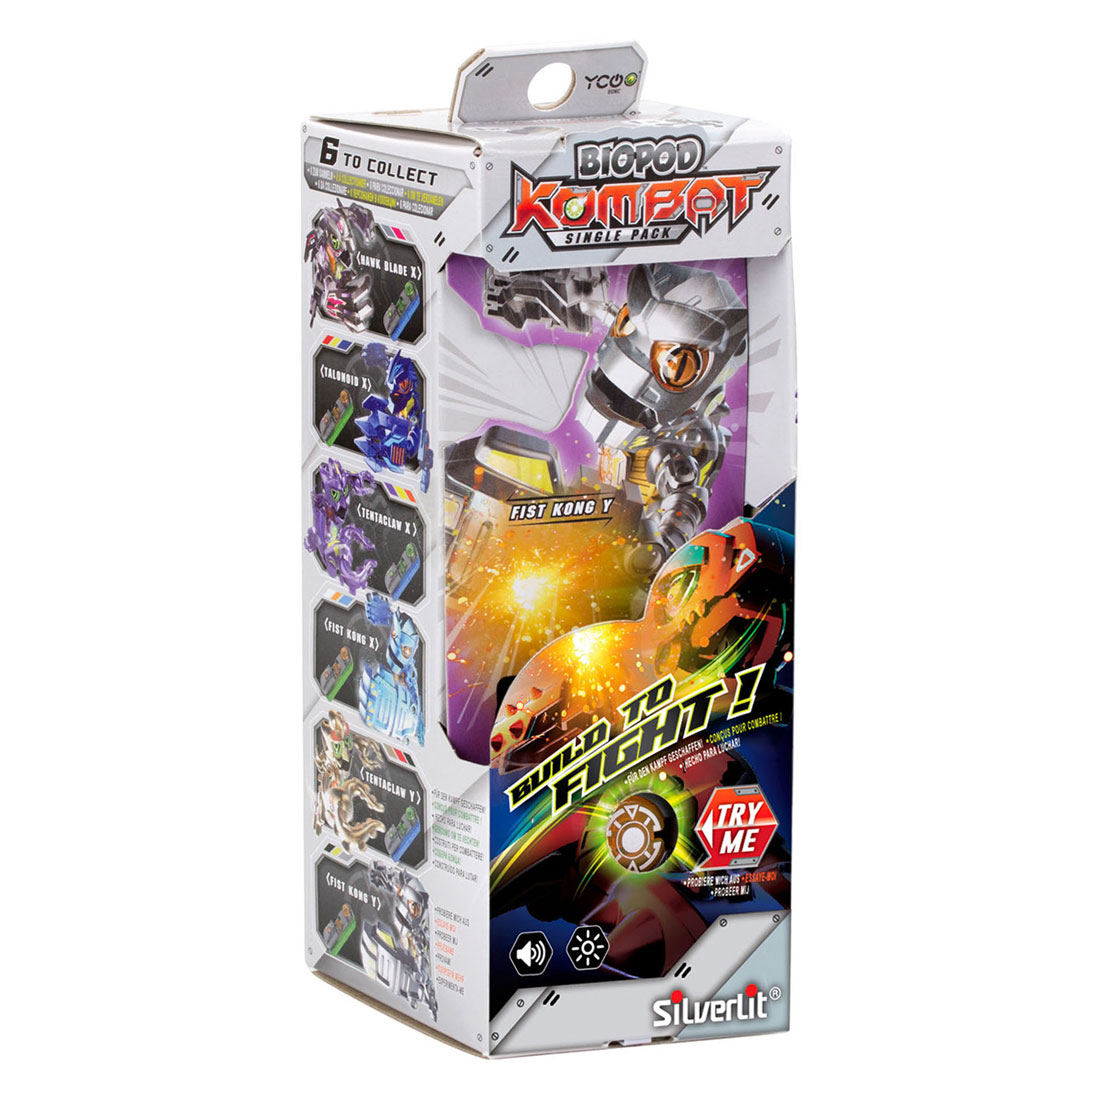 Silverlit Biopod Kombat Deluxe Battle pack